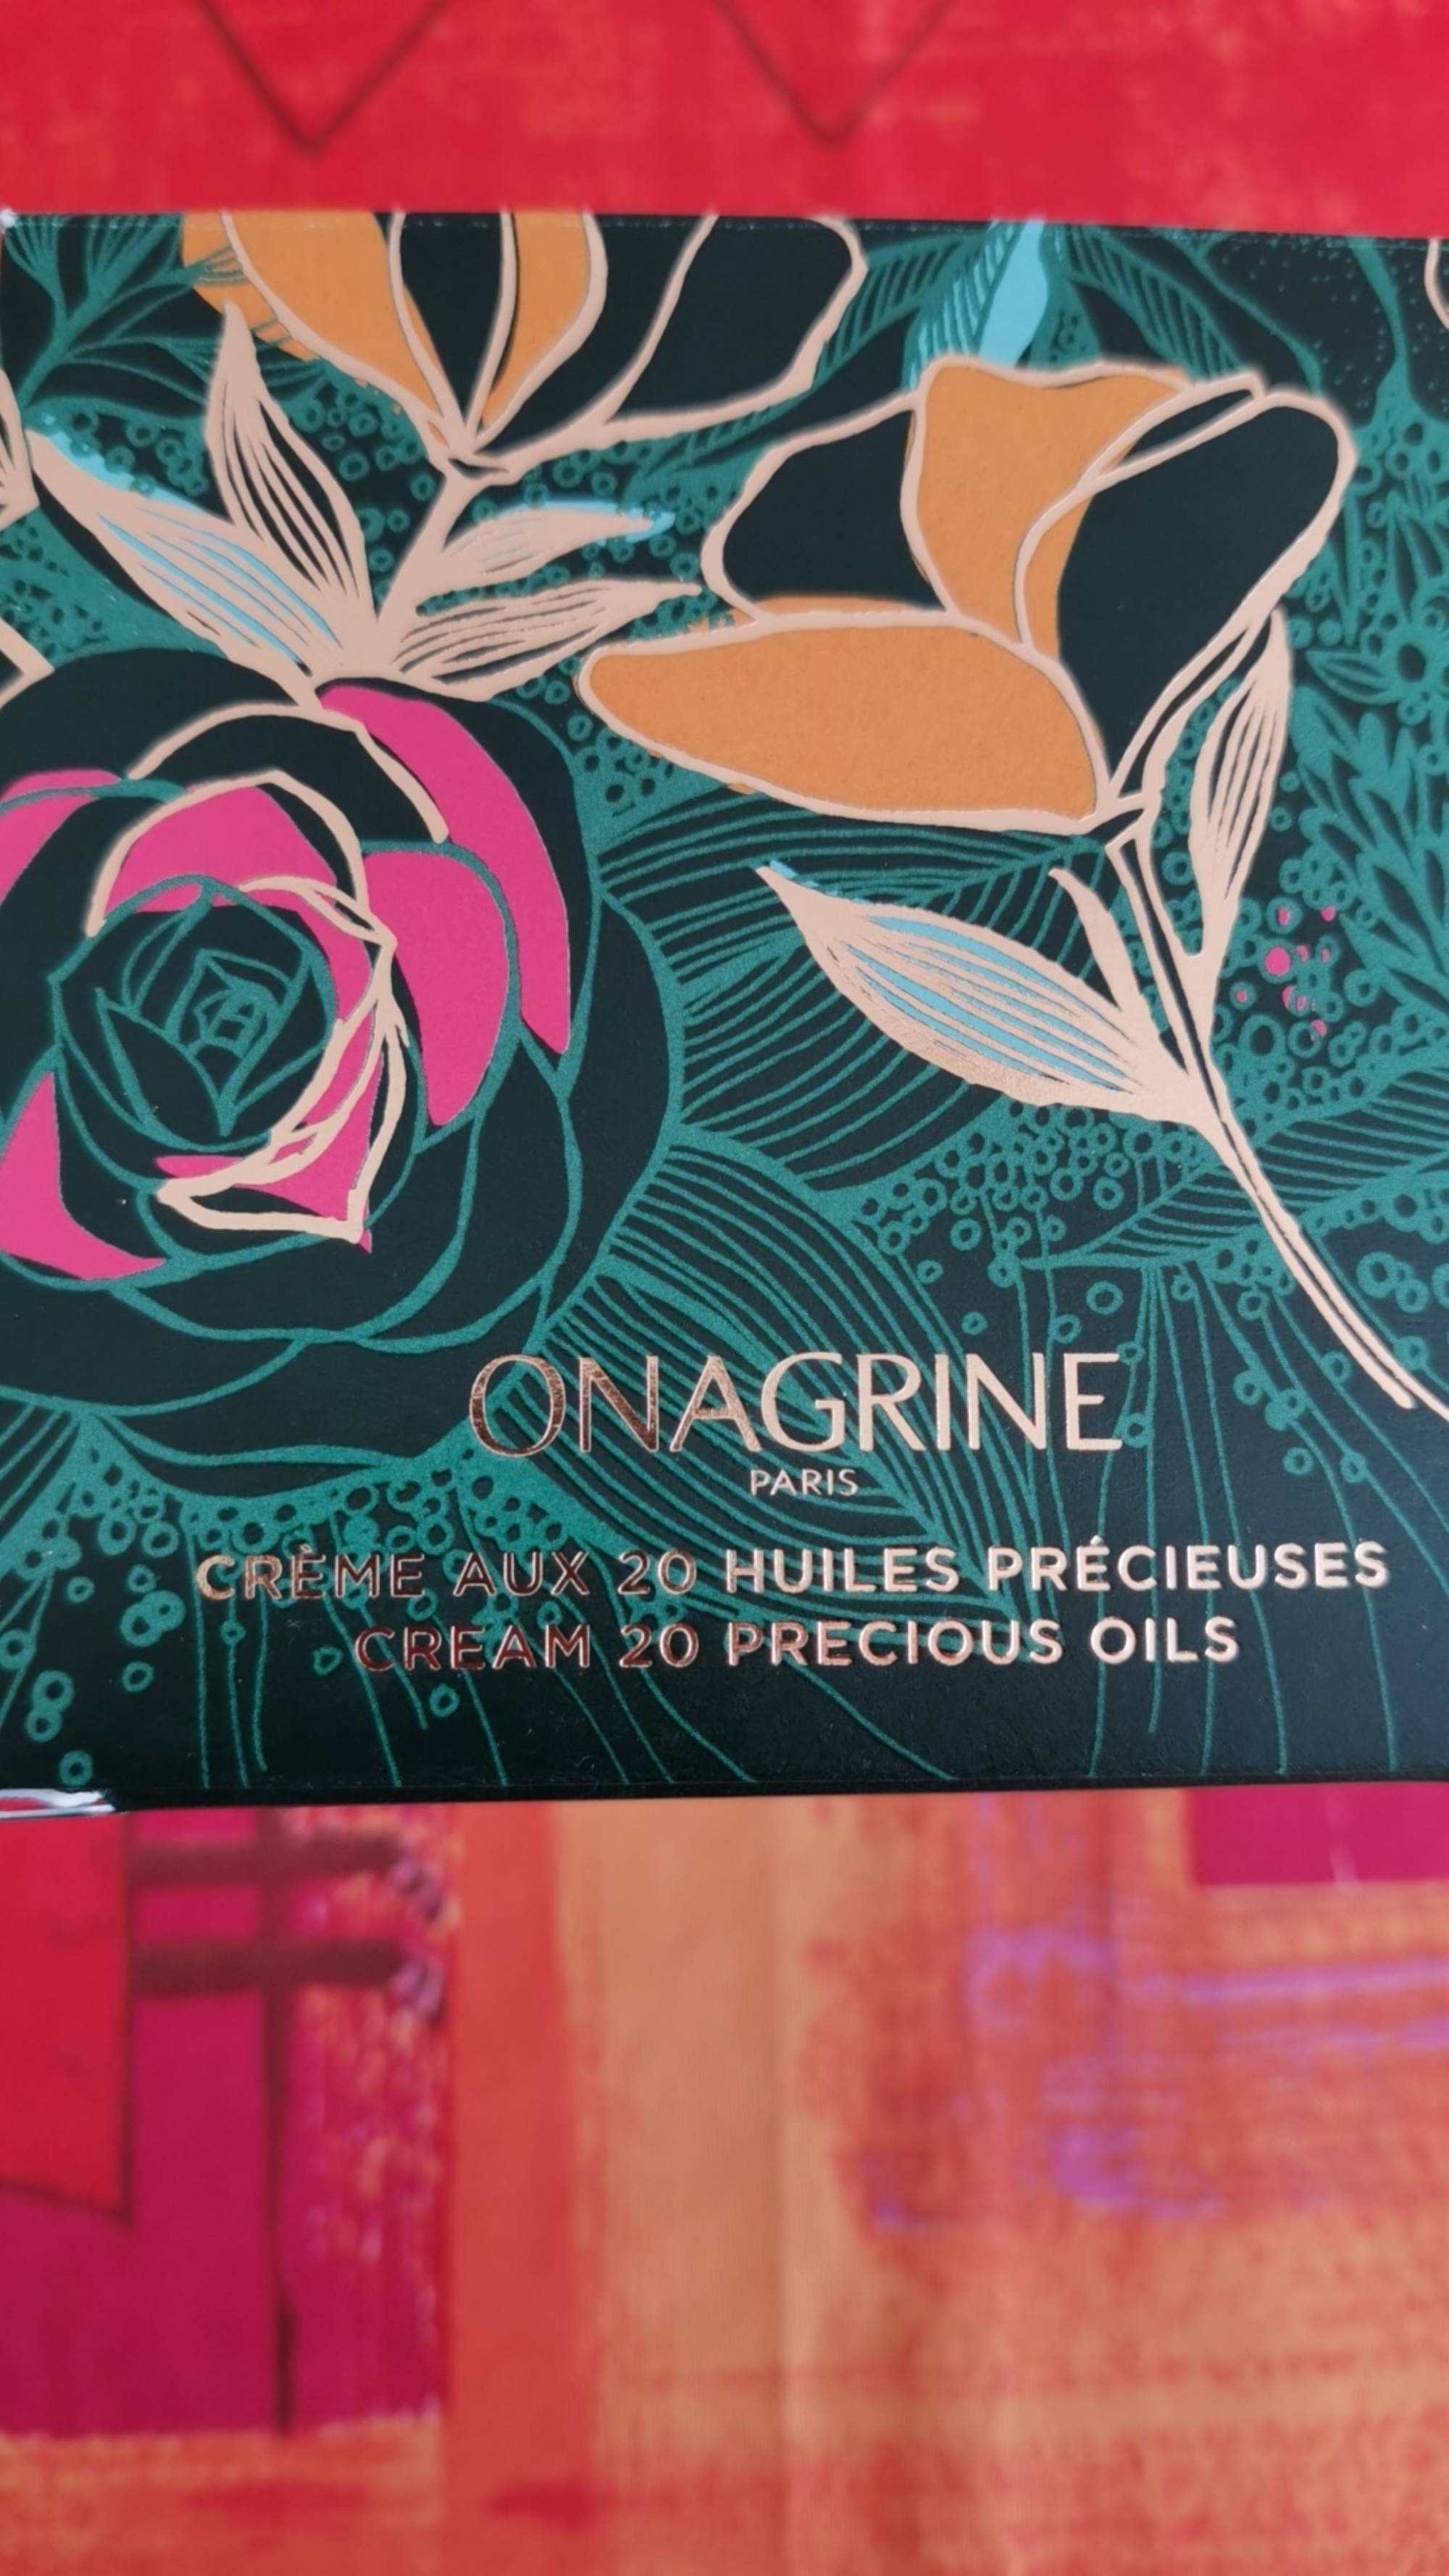 ONAGRINE - Crème aux 20 huiles précieuses